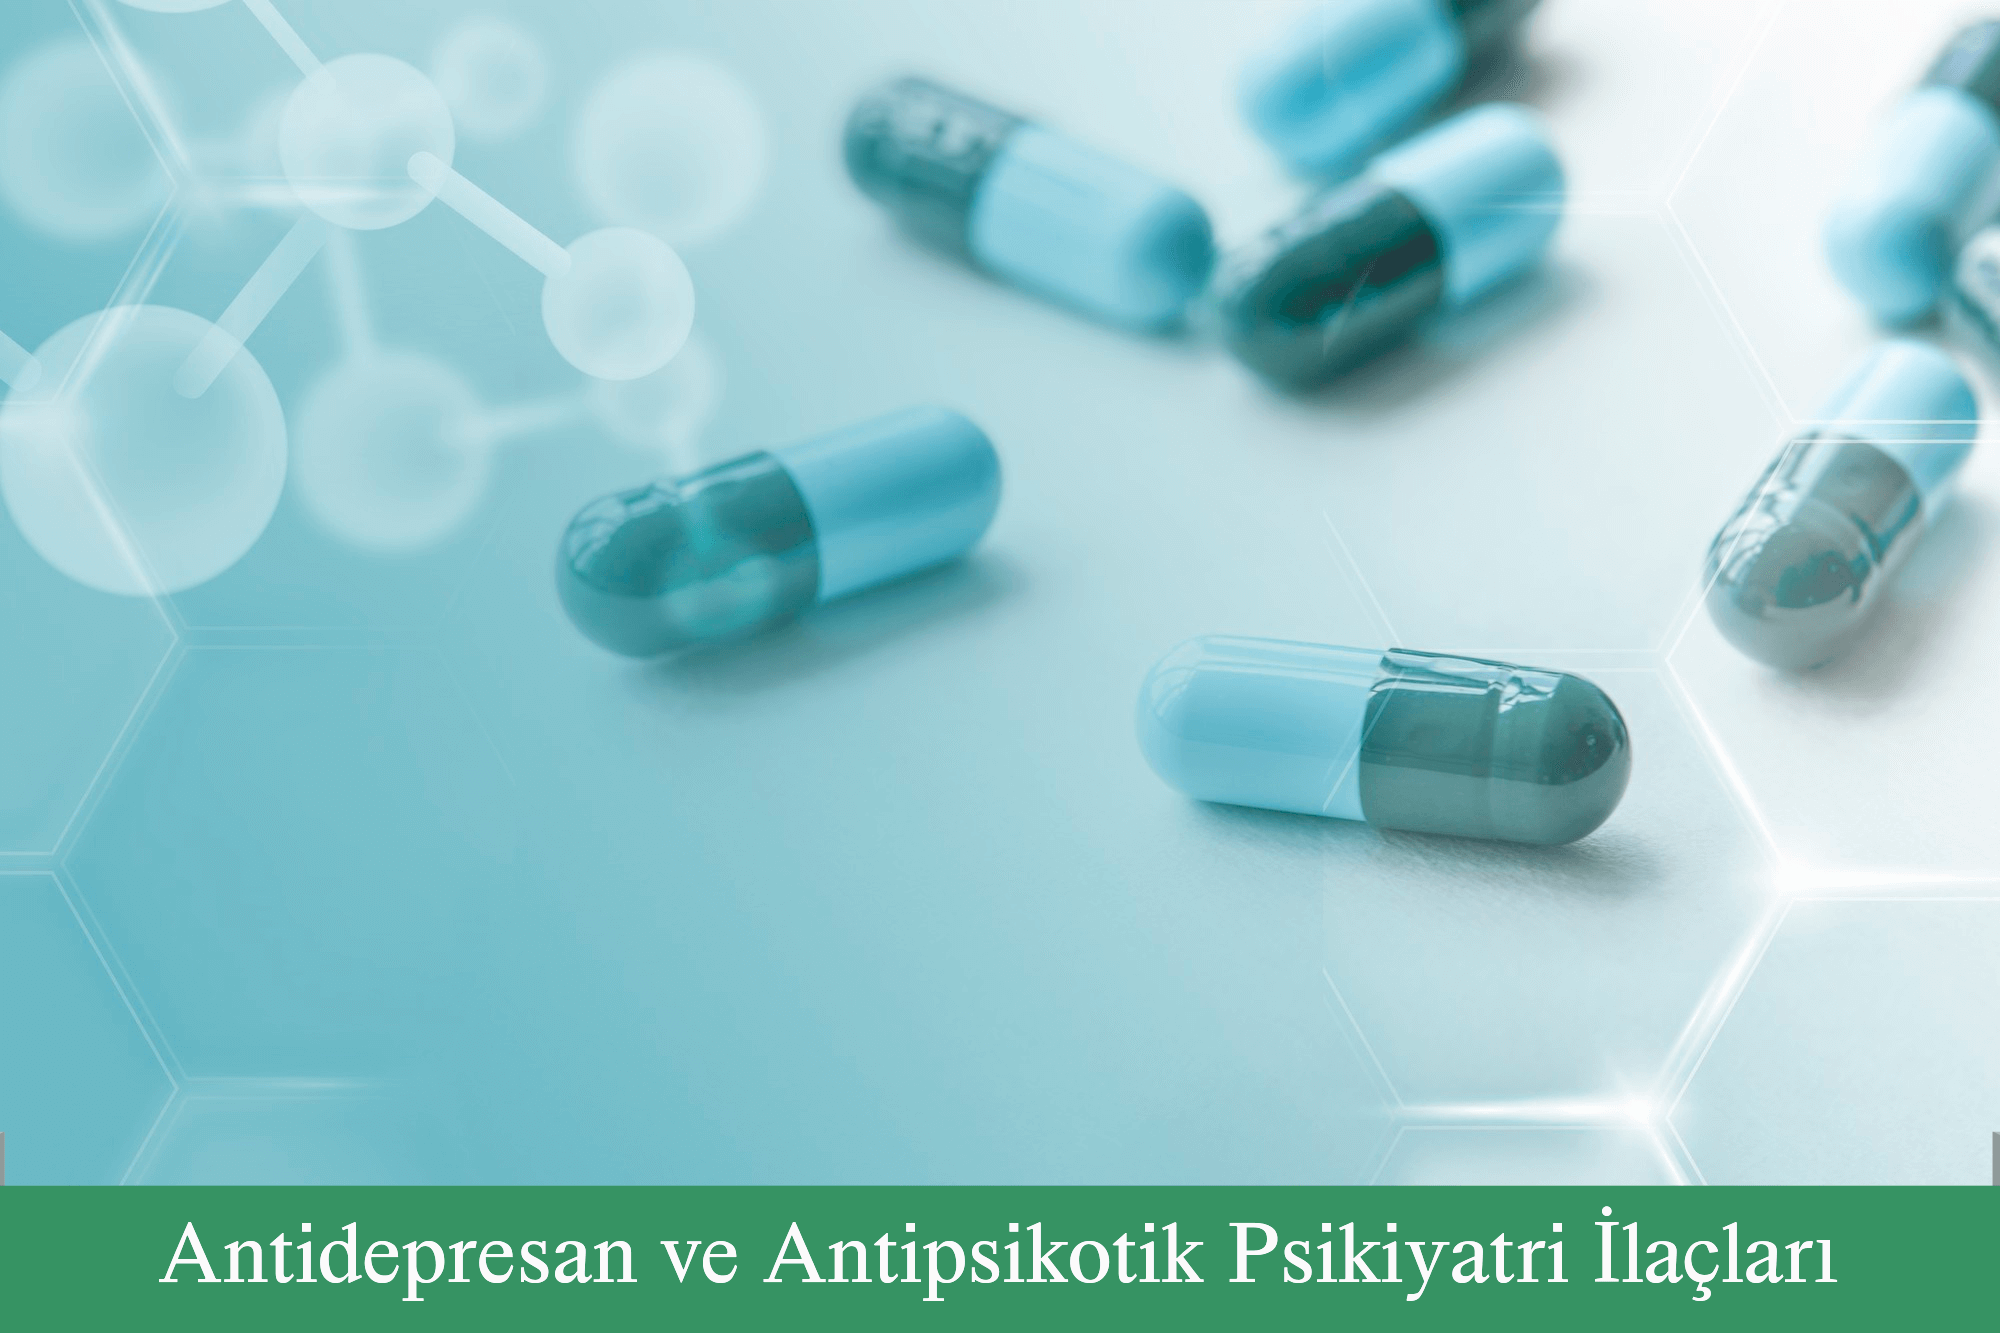 Antidepresan ve Antipsikotik Psikiyatri İlaçları